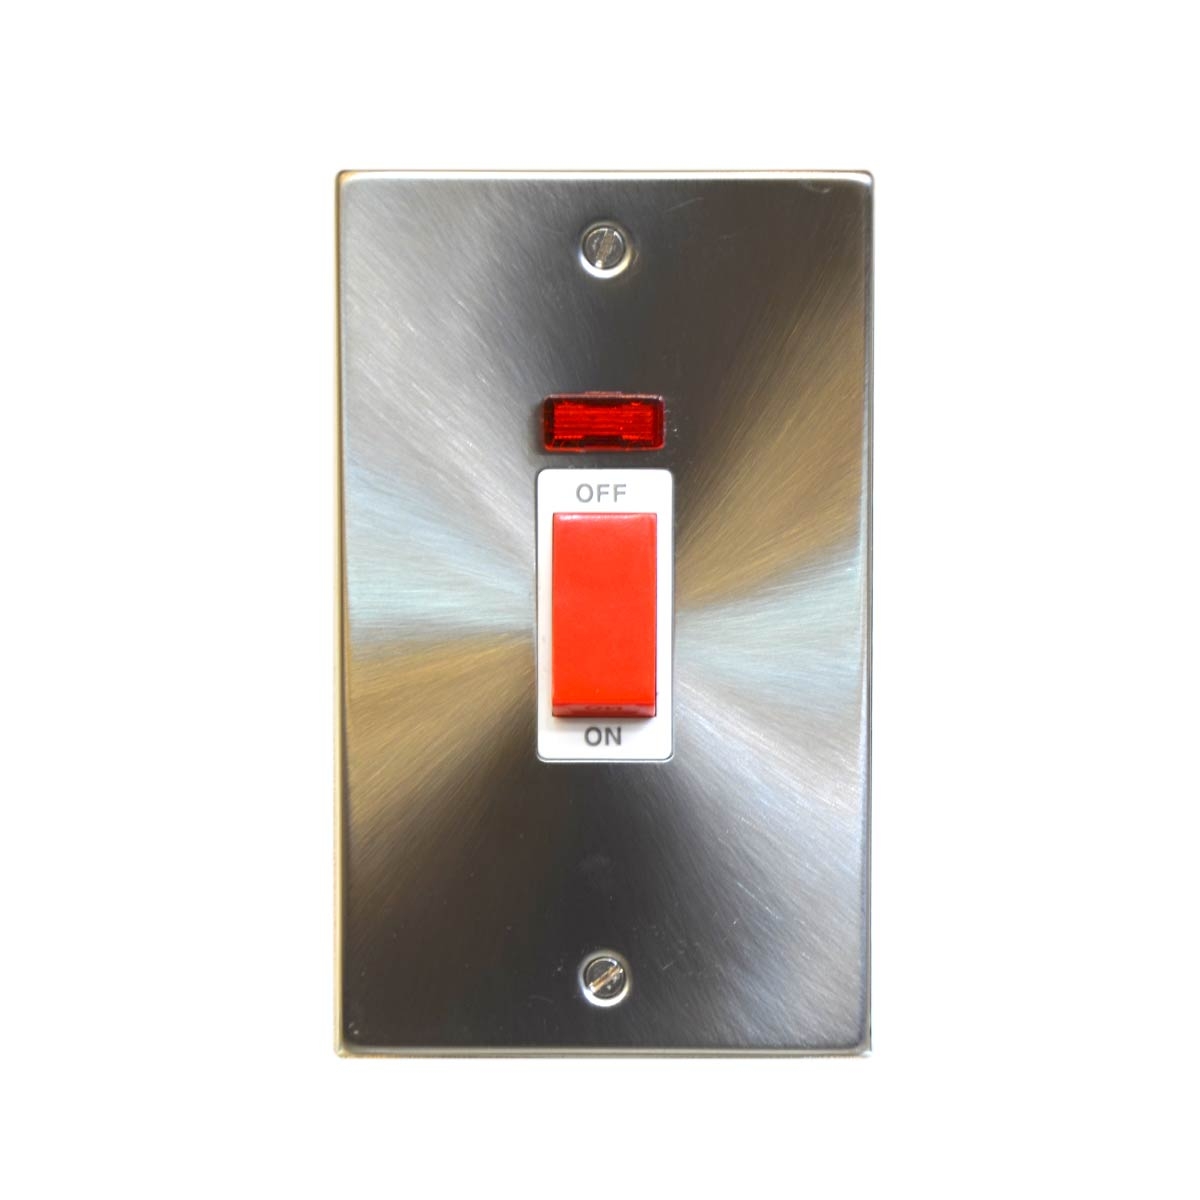 T329GB المفتاح الكهربائي - عدد الكبسات 1 - 45 أمبير - اللون فضي ميت   